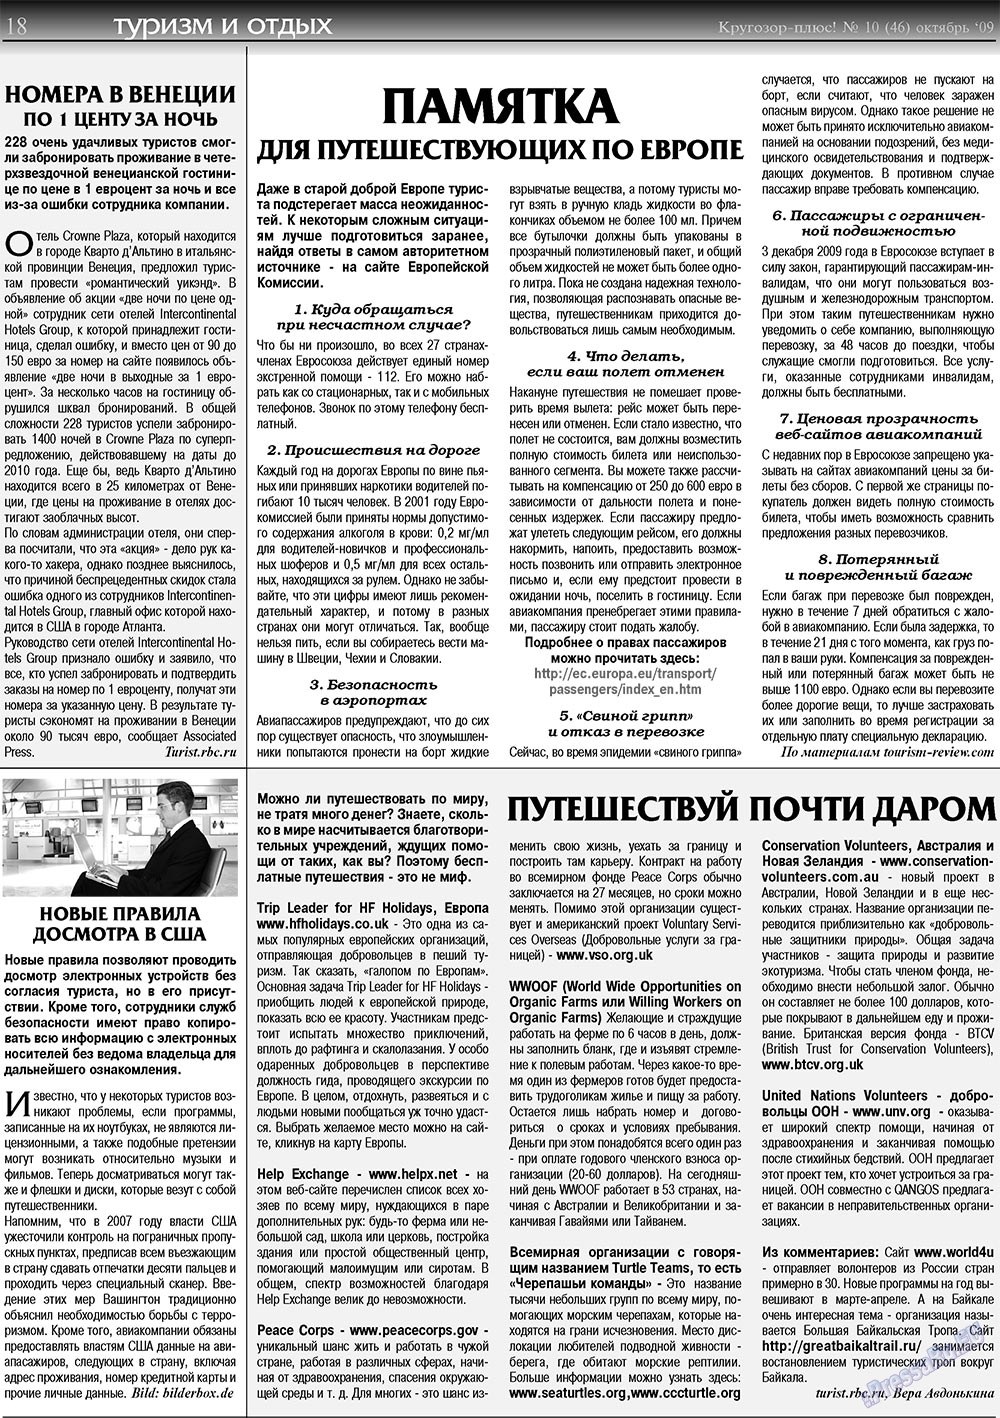 Кругозор плюс!, газета. 2009 №10 стр.18